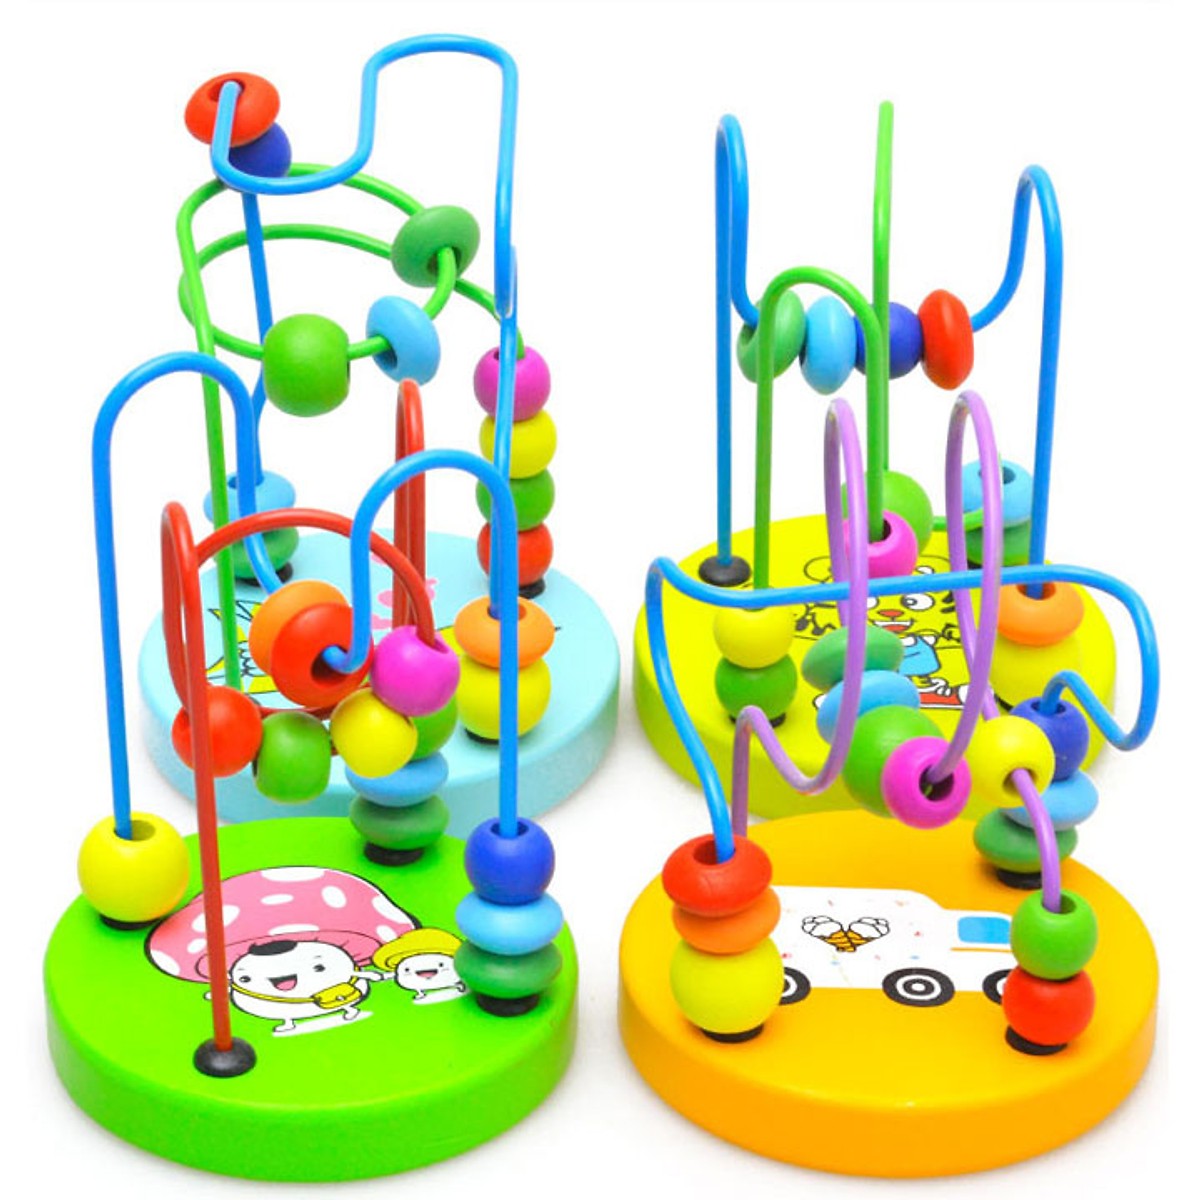 Bộ đồ chơi gỗ đa năng cho bé gồm đàn gỗ, sâu gỗ, tháp cầu vồng, luồn hạt GT